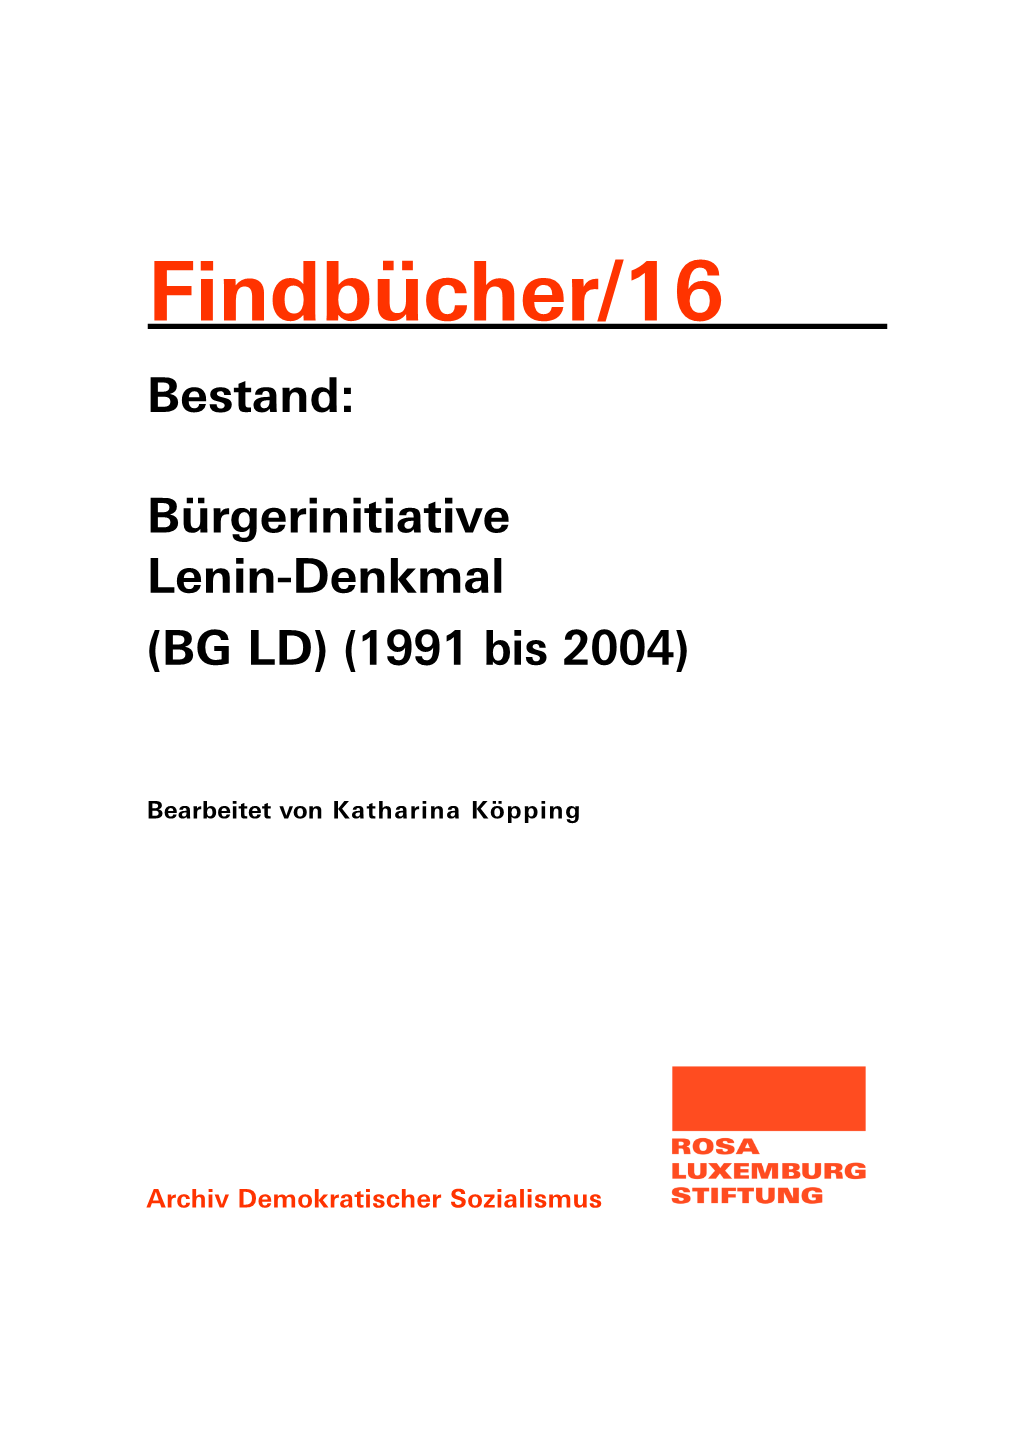 Bestand: Bürgerinitiative Lenin-Denkmal (BG